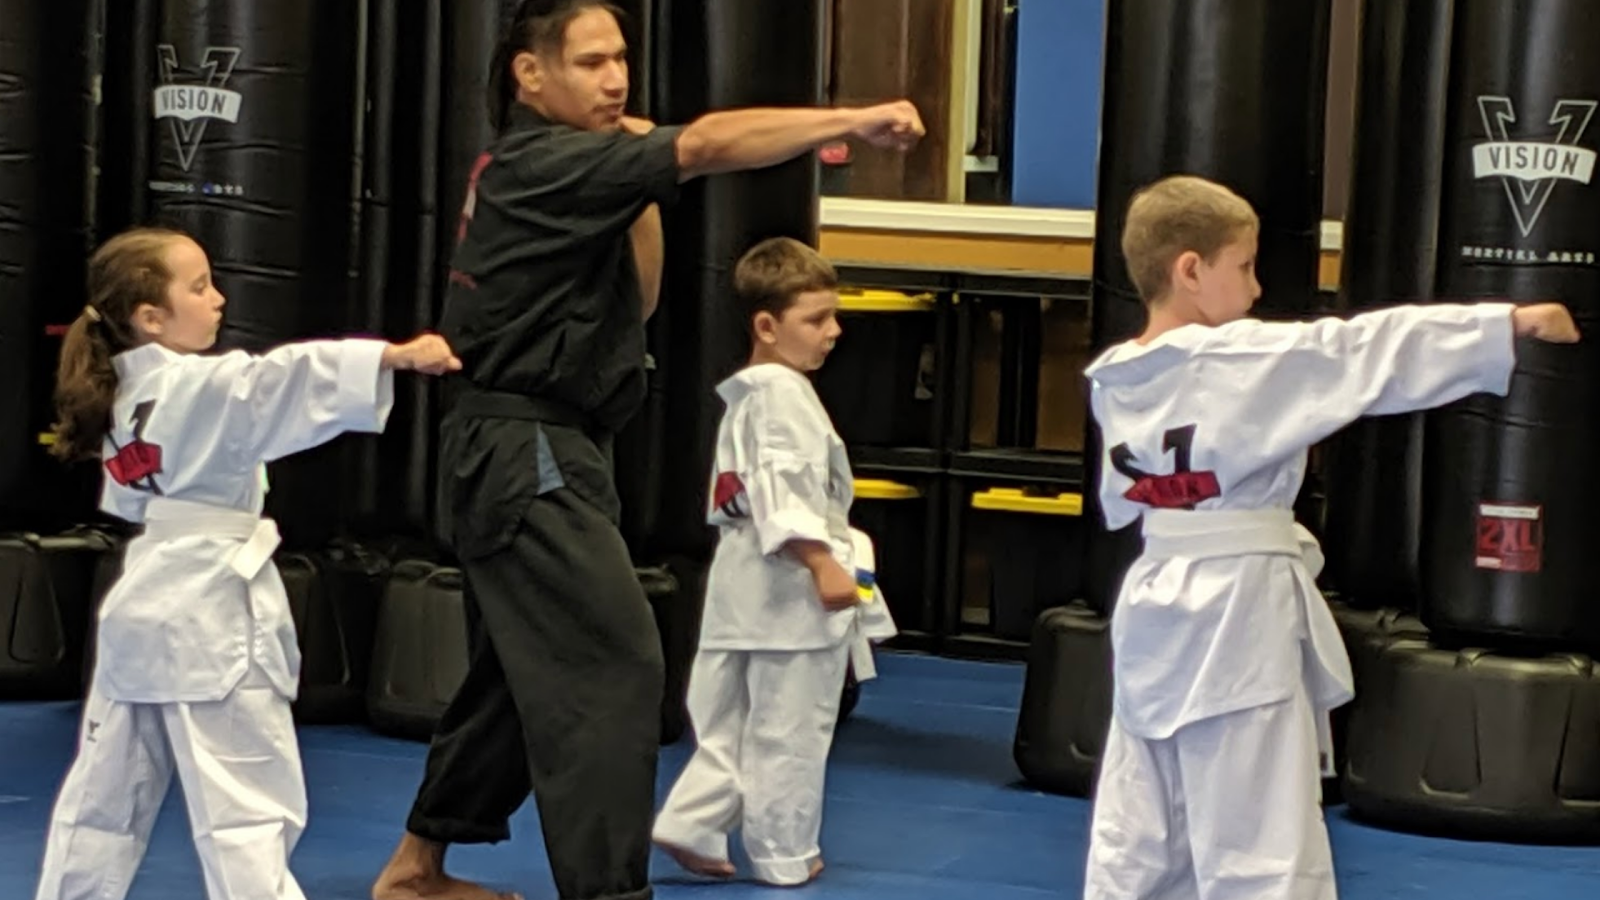 Martial Arts Class